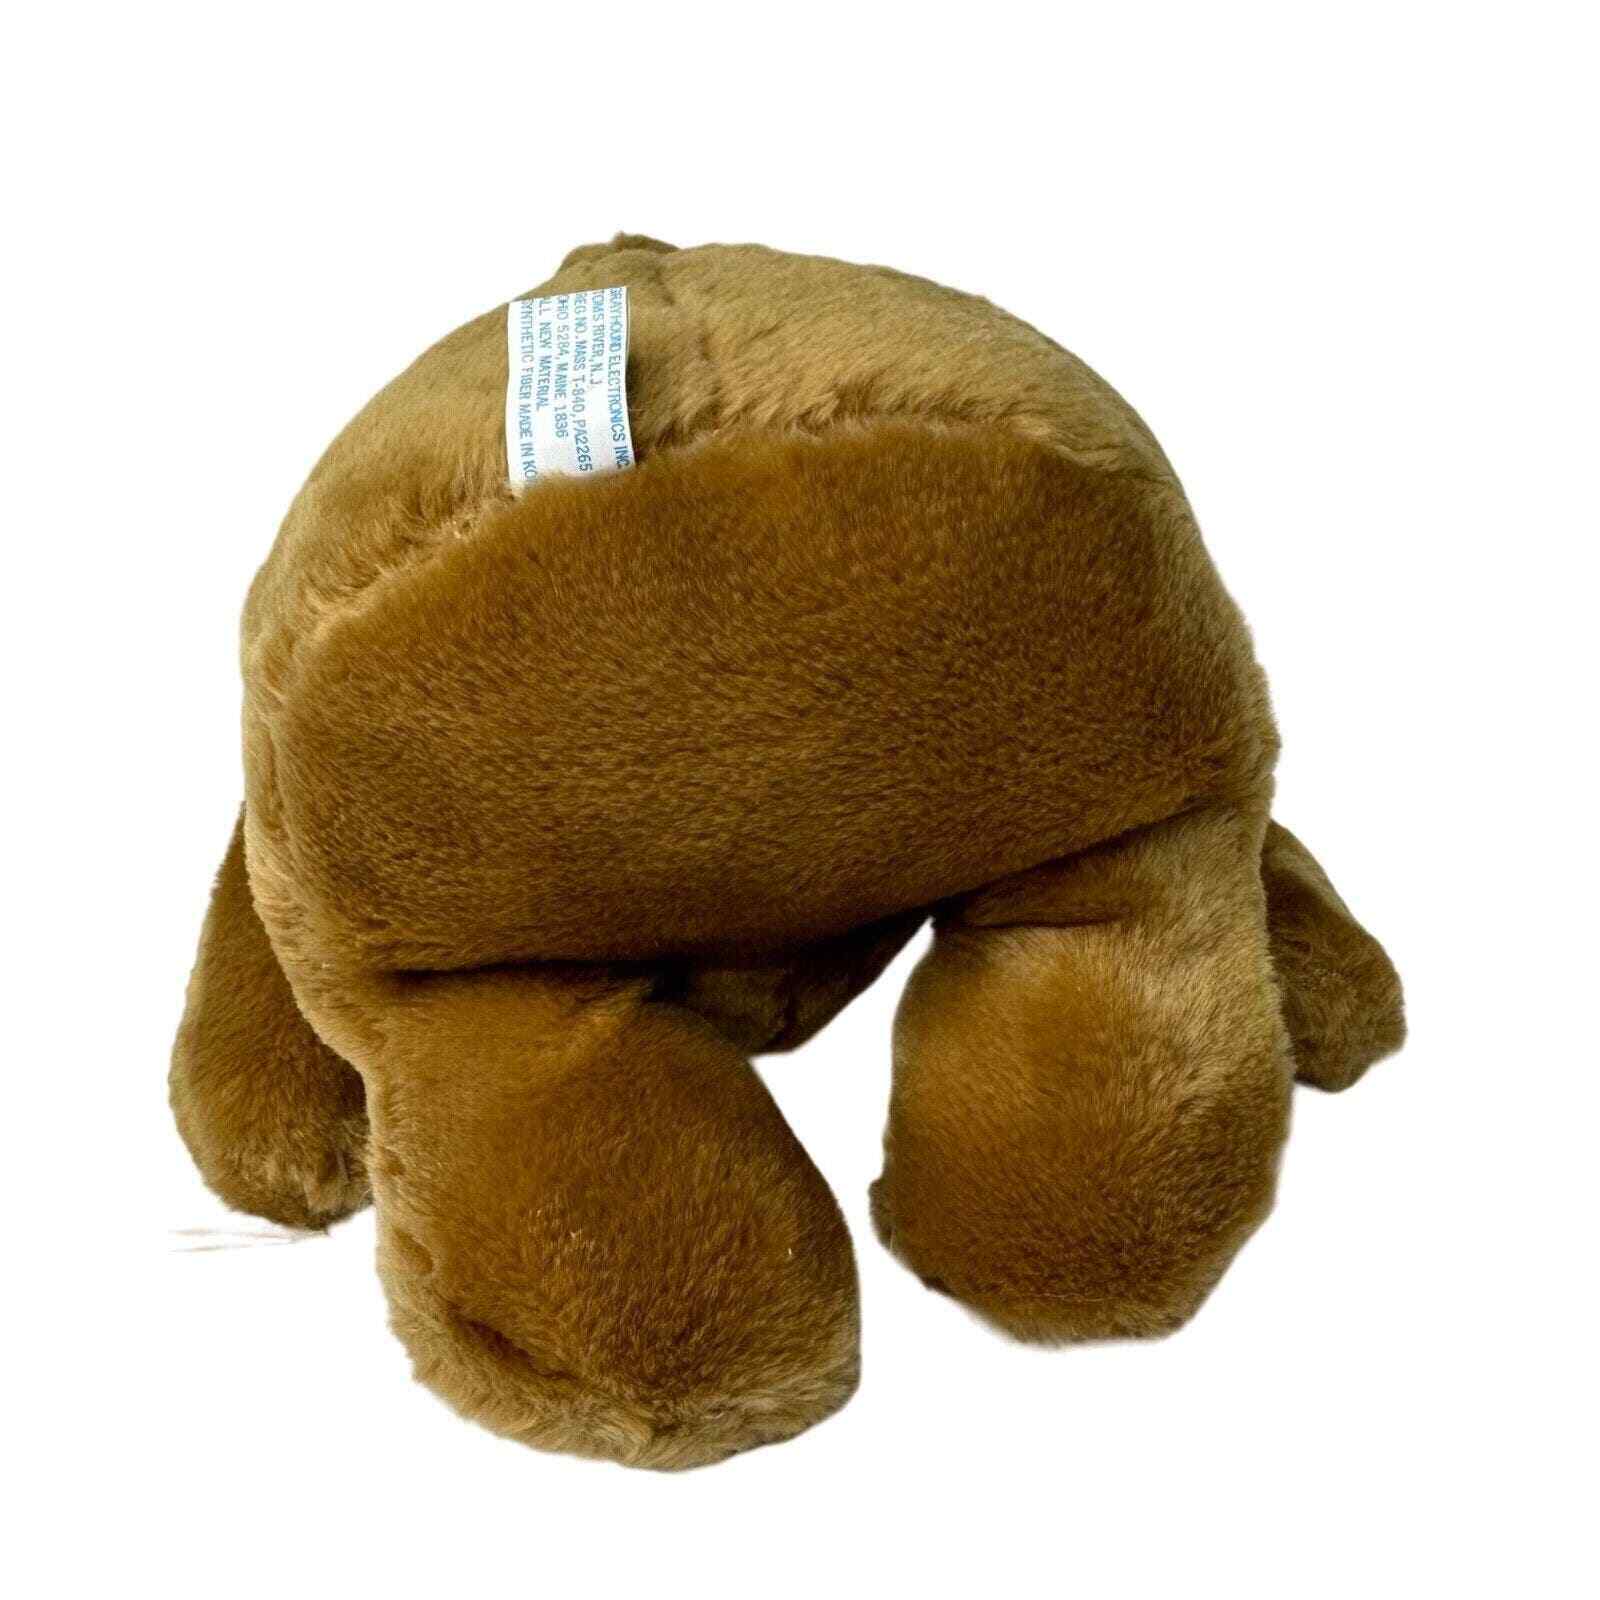 Vintage ET The Extraterrestrial Stuffed Animal Plush GEI Grayhound 10"